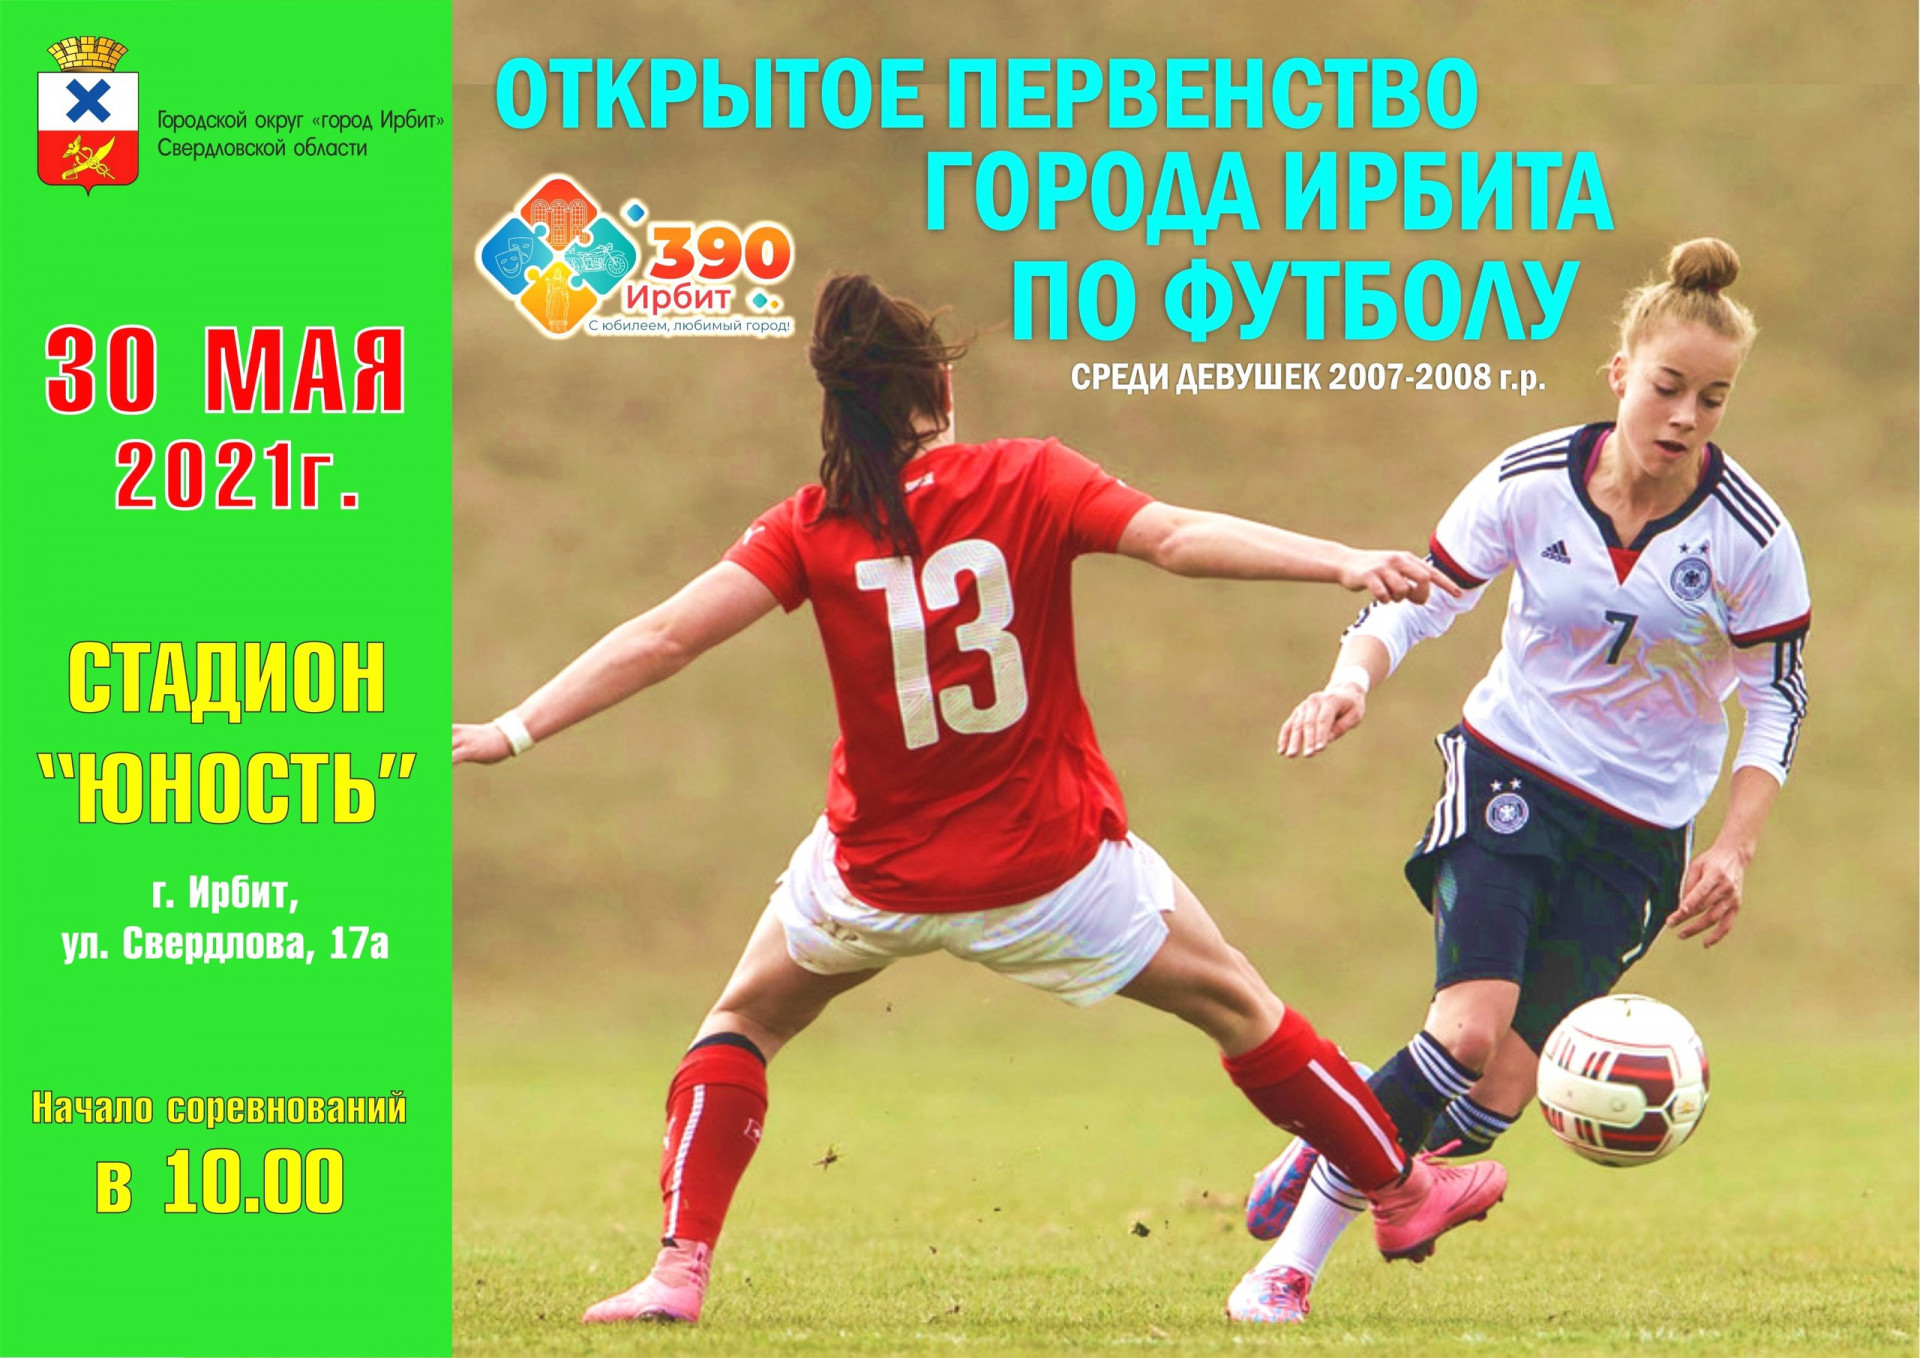 Открытое первенство города Ирбита по футболу среди девушек 2007-2008 г.р.